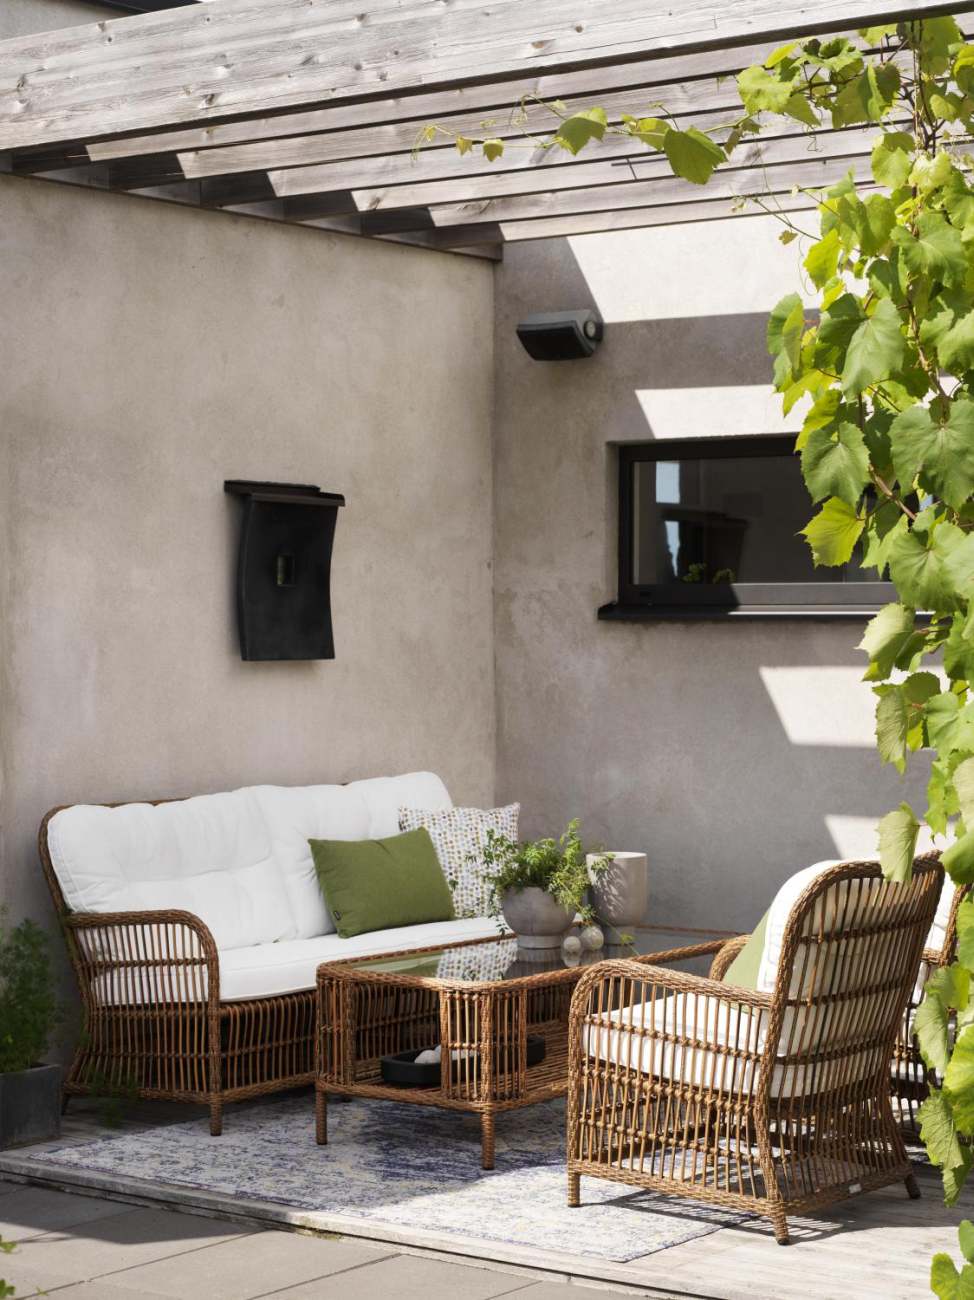 Der Gartensessel Anemon überzeugt mit seinem modernen Design. Gefertigt wurde er aus Rattan, welcher einen braunen Farbton besitzt. Das Gestell ist auch aus Rattan. Der Sessel besitzt eine Sitzhöhe von 47 cm.